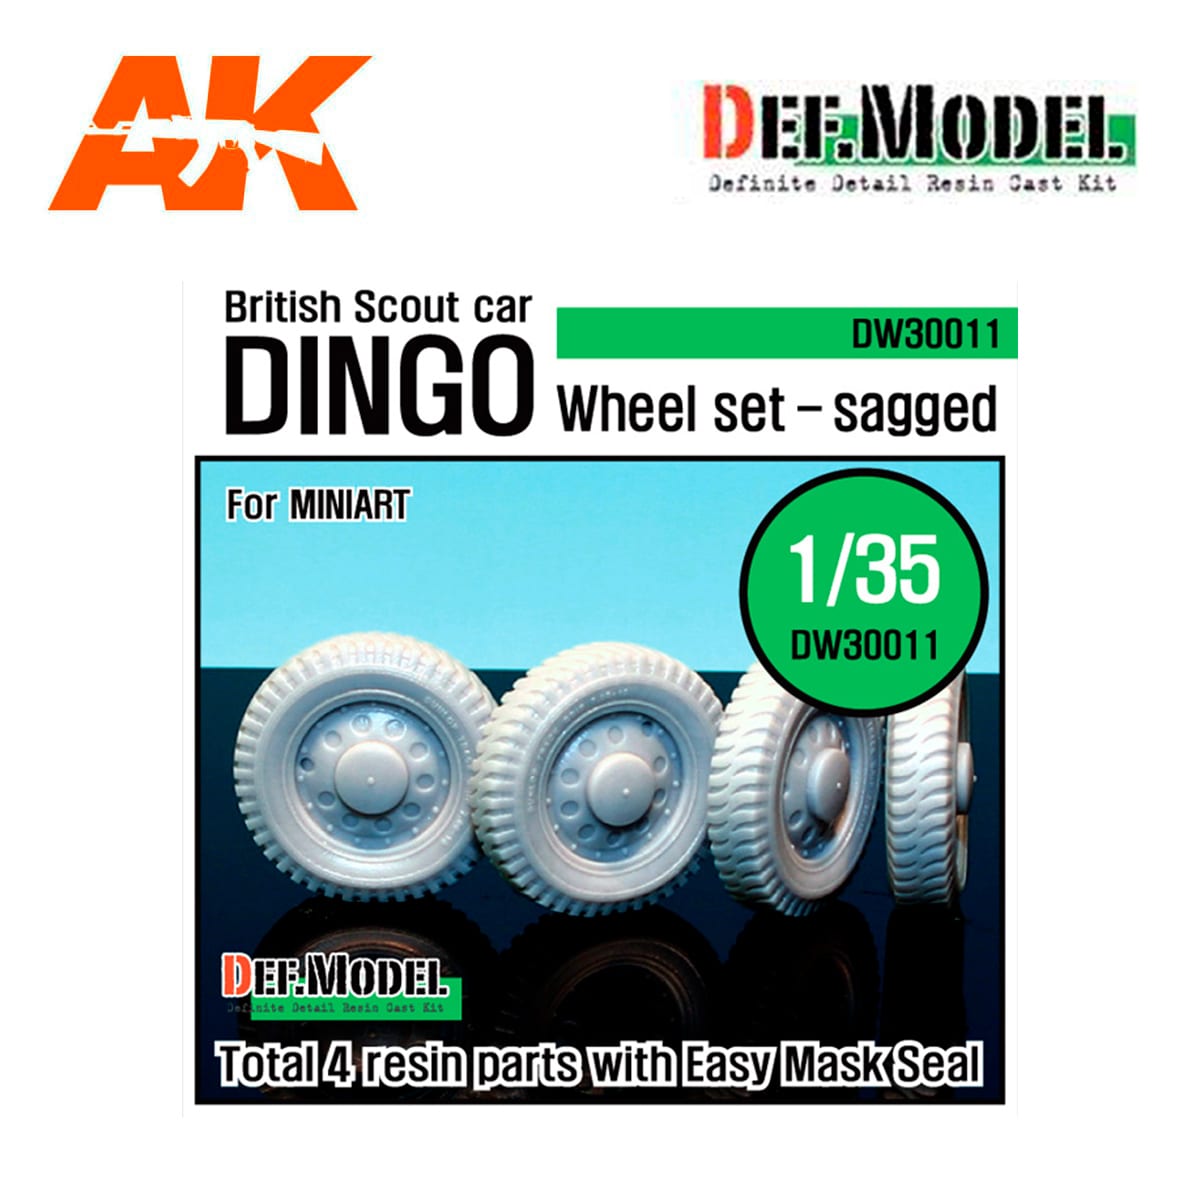 U.K. Dingo Wheel set (for Miniart 1/35)